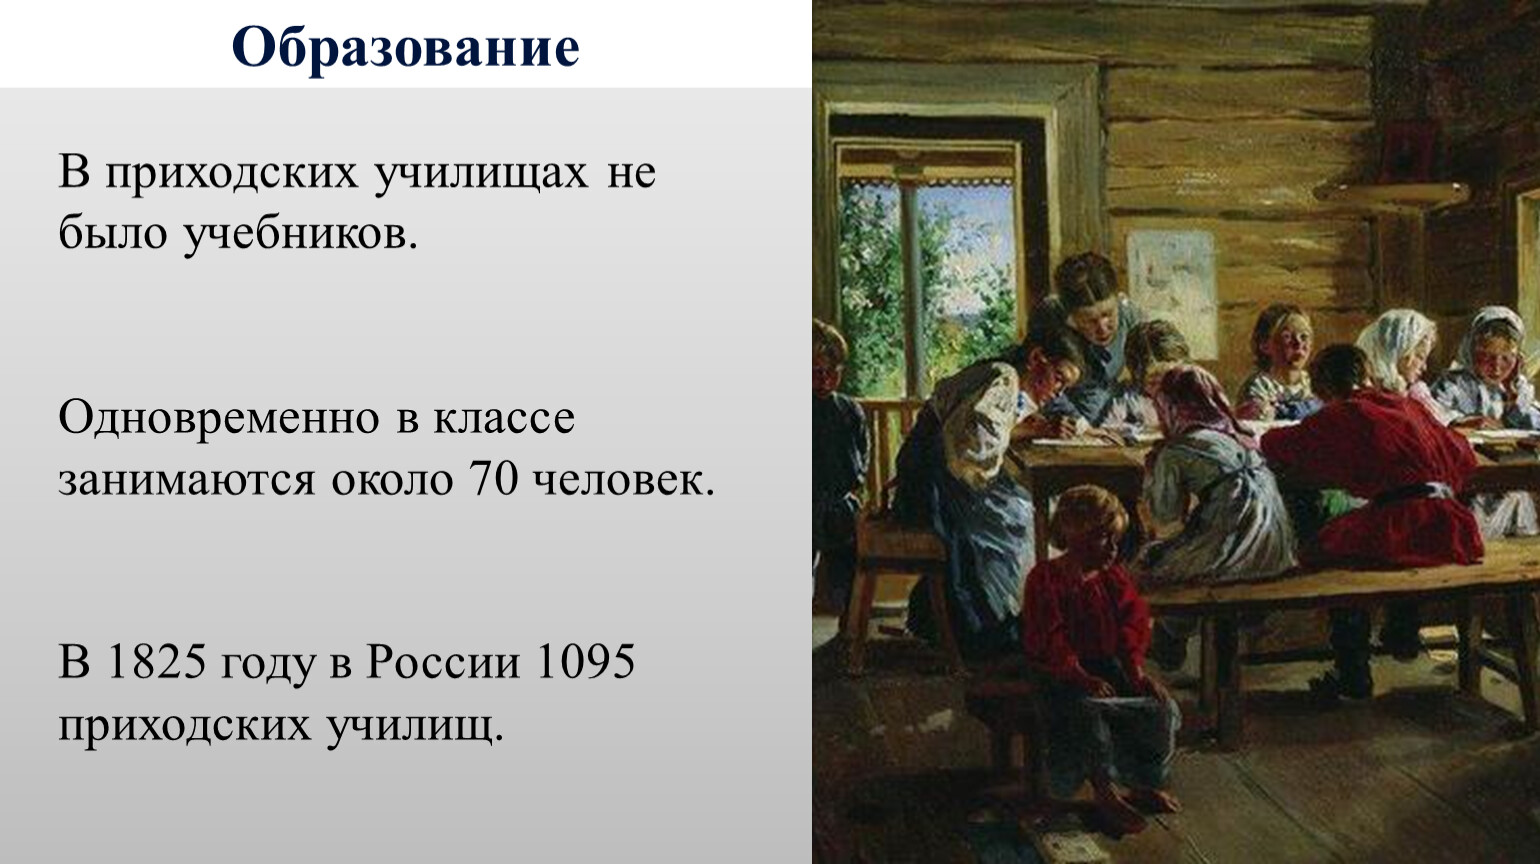 Приходские училища в России в 19 веке